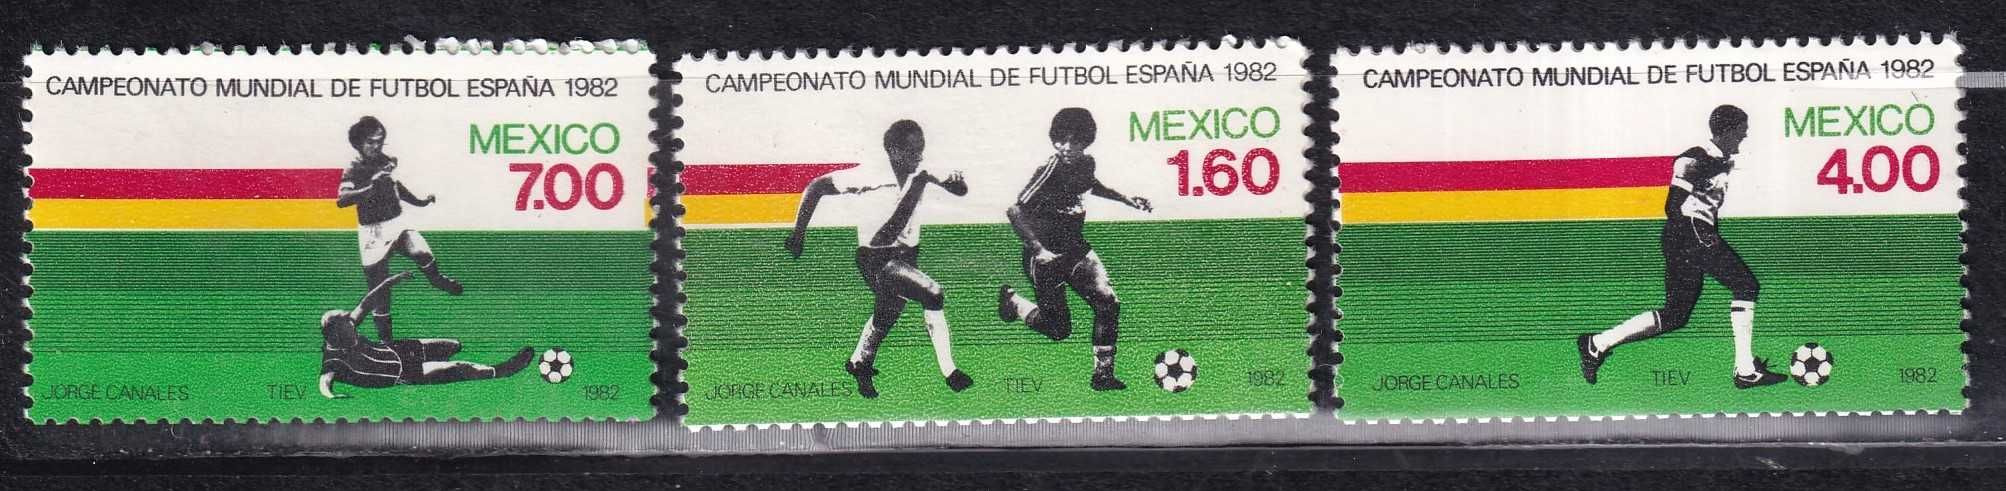 Meksyk 1982 cena 2,90 zł kat.2,25€ - piłka nożna